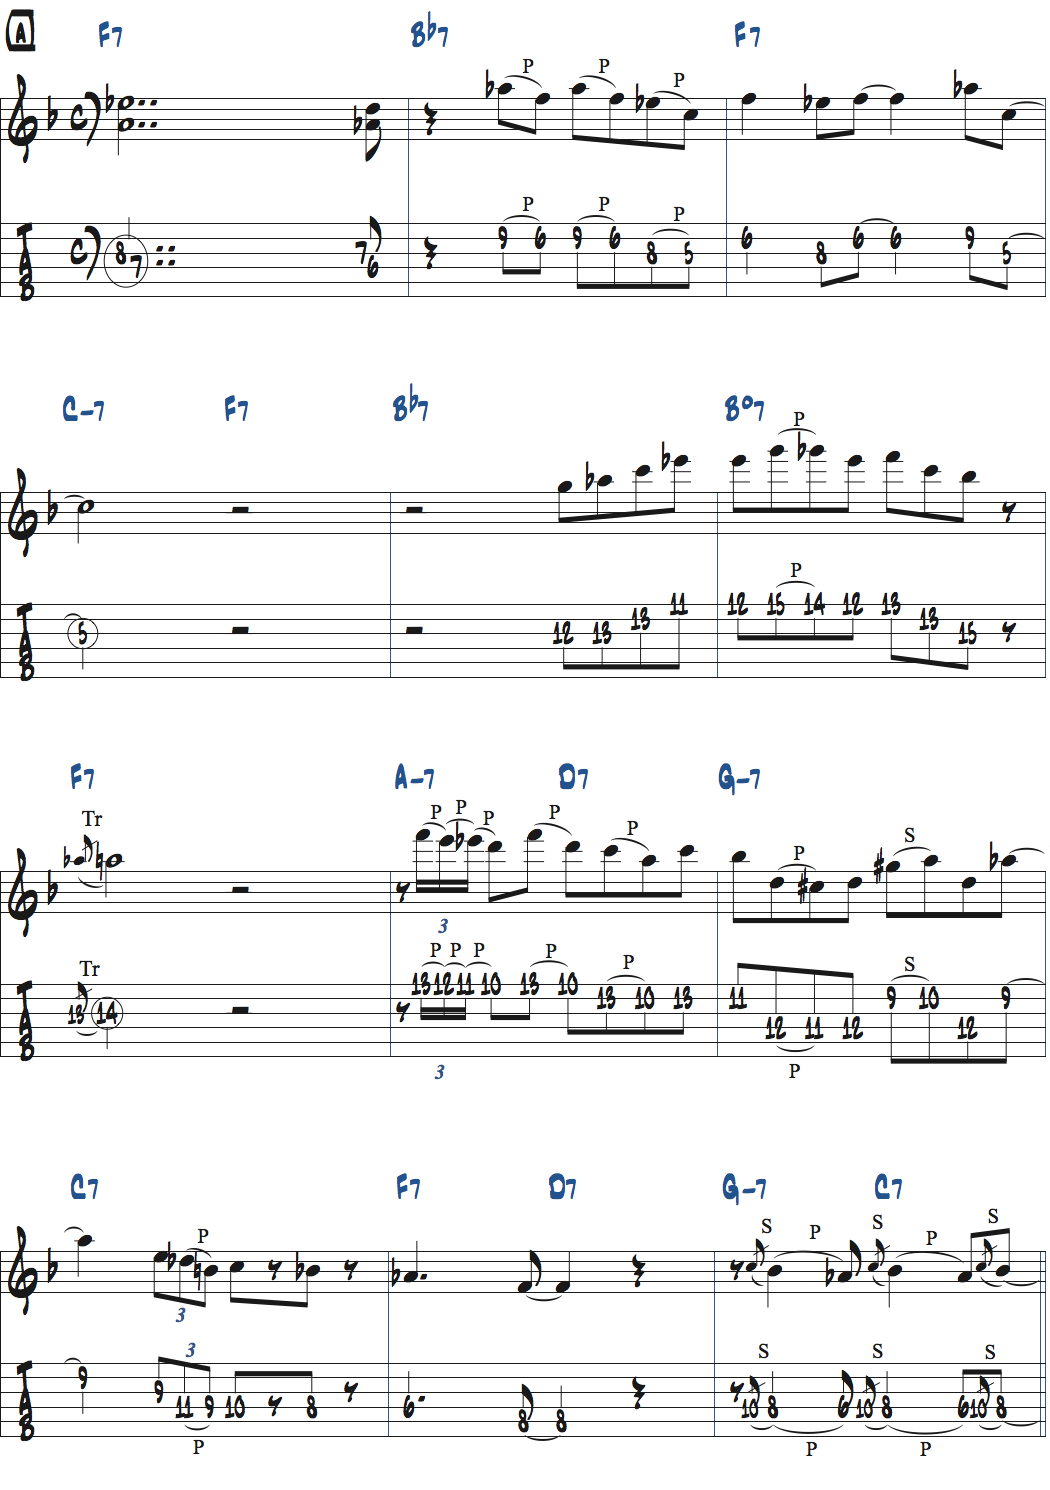 キーFのジャズブルースでのアドリブ楽譜ページ1